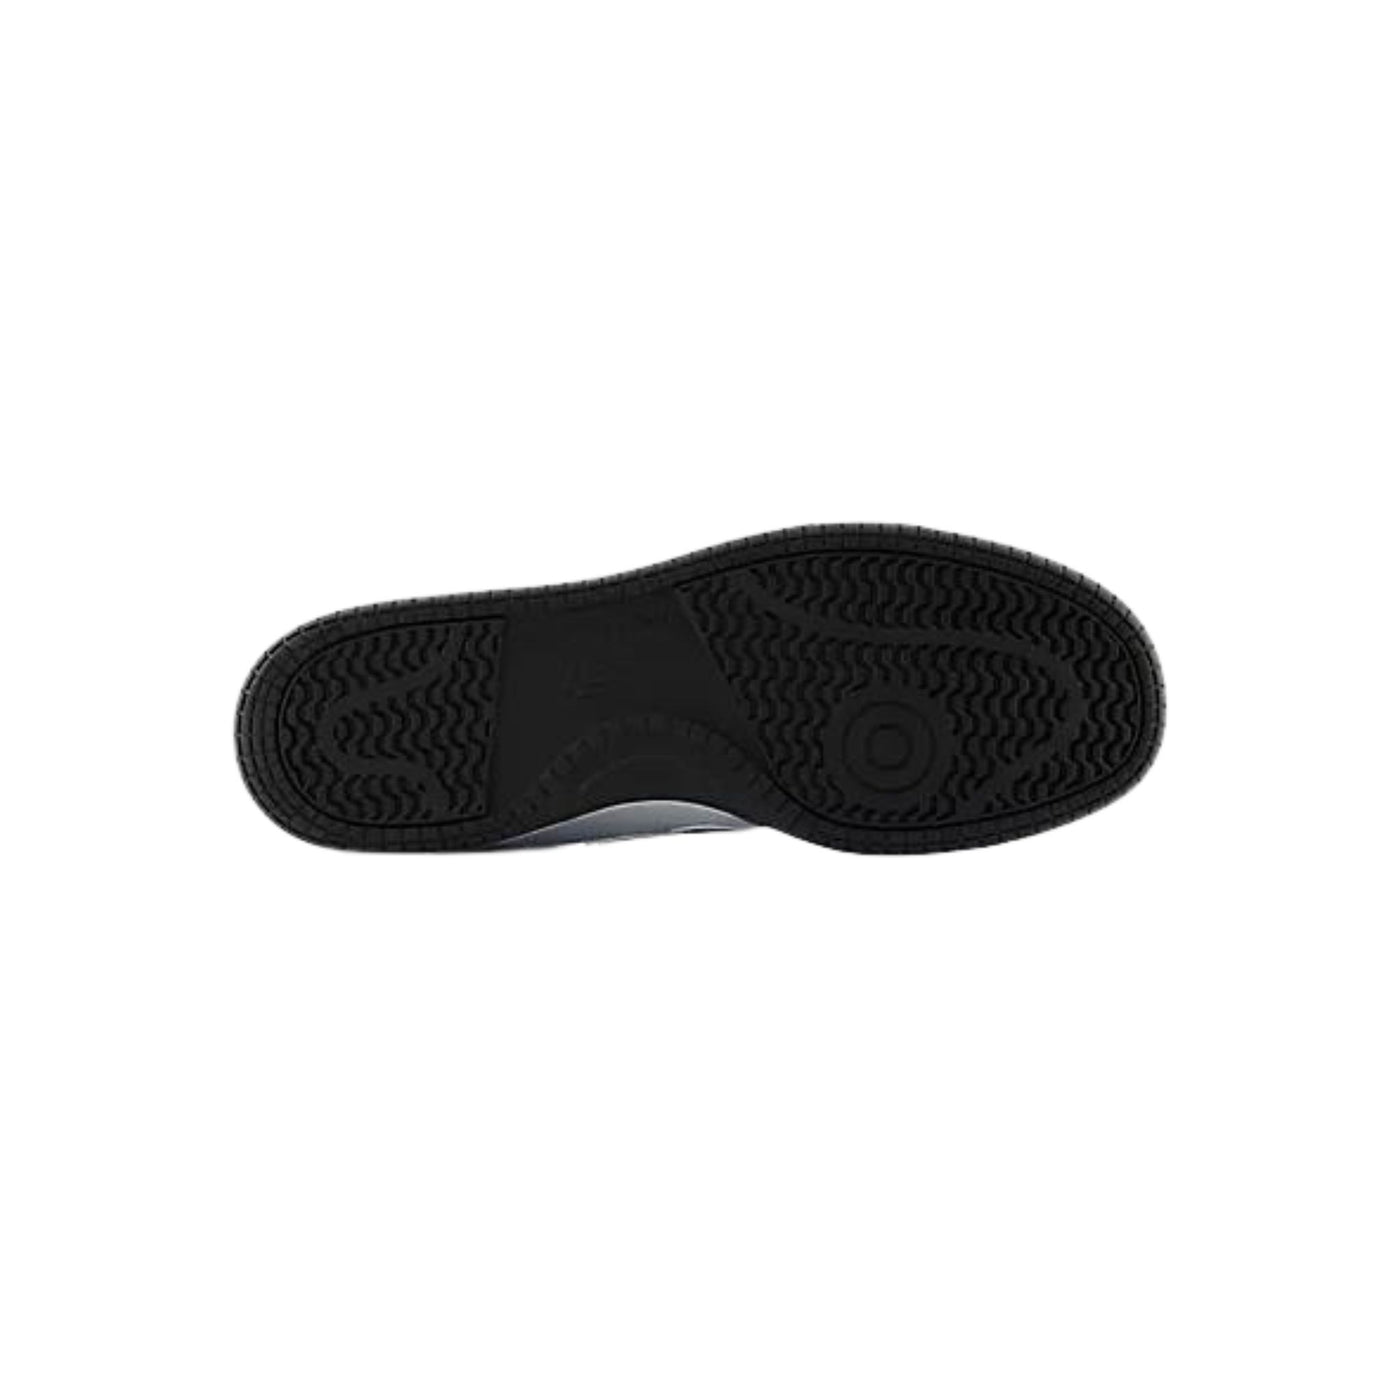 Sneakers Unisex modello 480 con dettagli neri